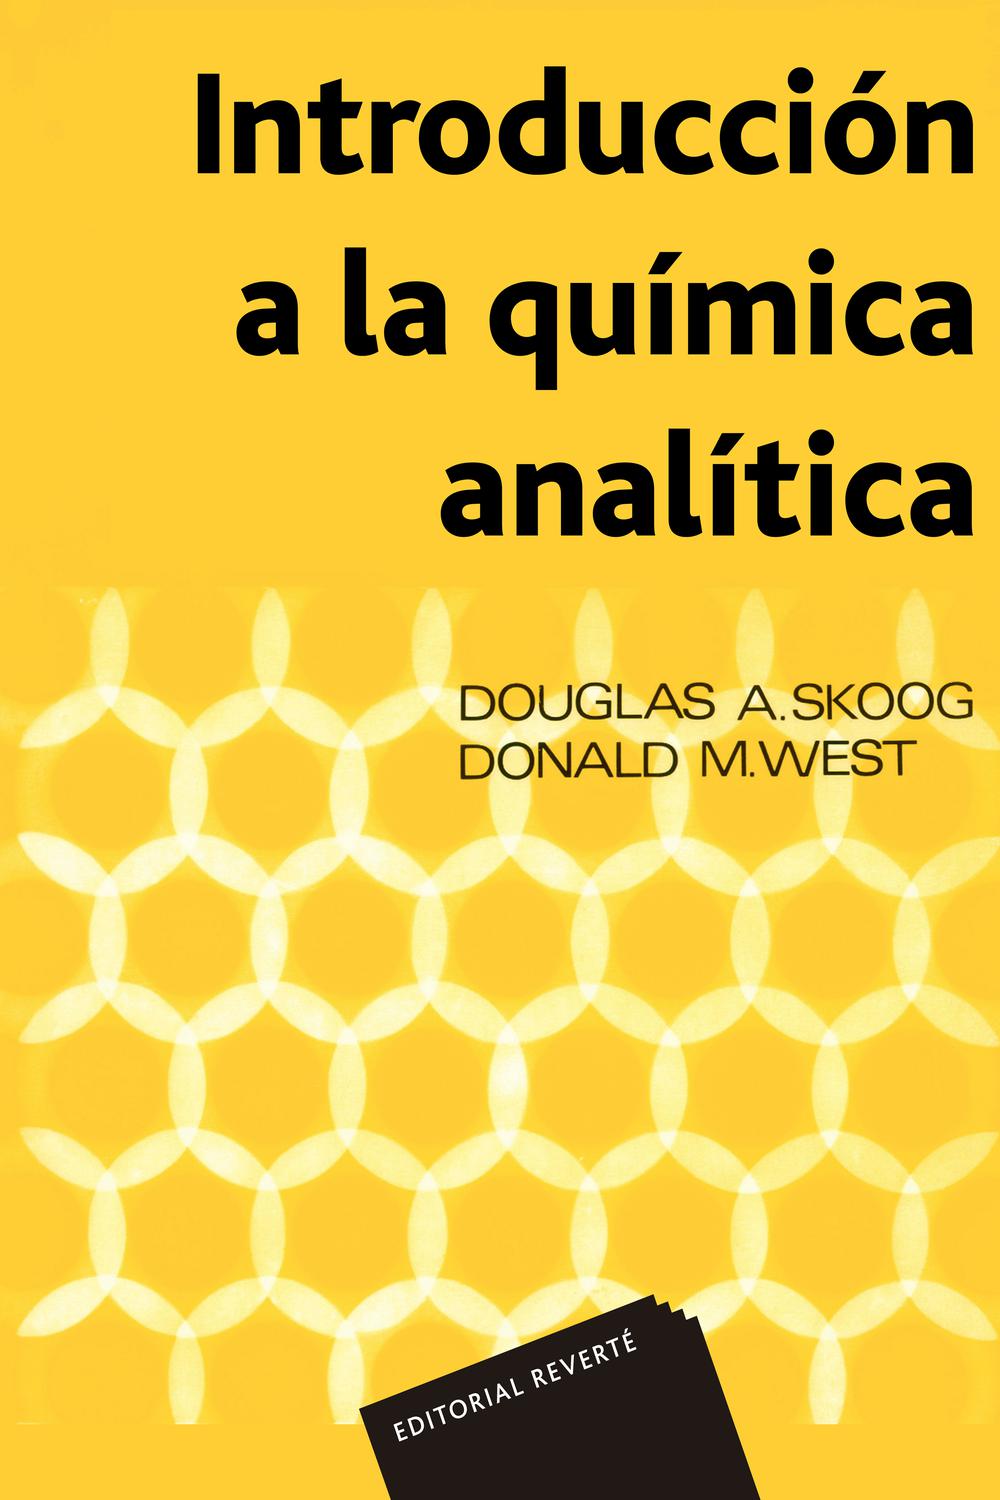 Egoísmo es bonito frotis PDF] Introducción a la química analítica by Douglas A. Skoog eBook | Perlego